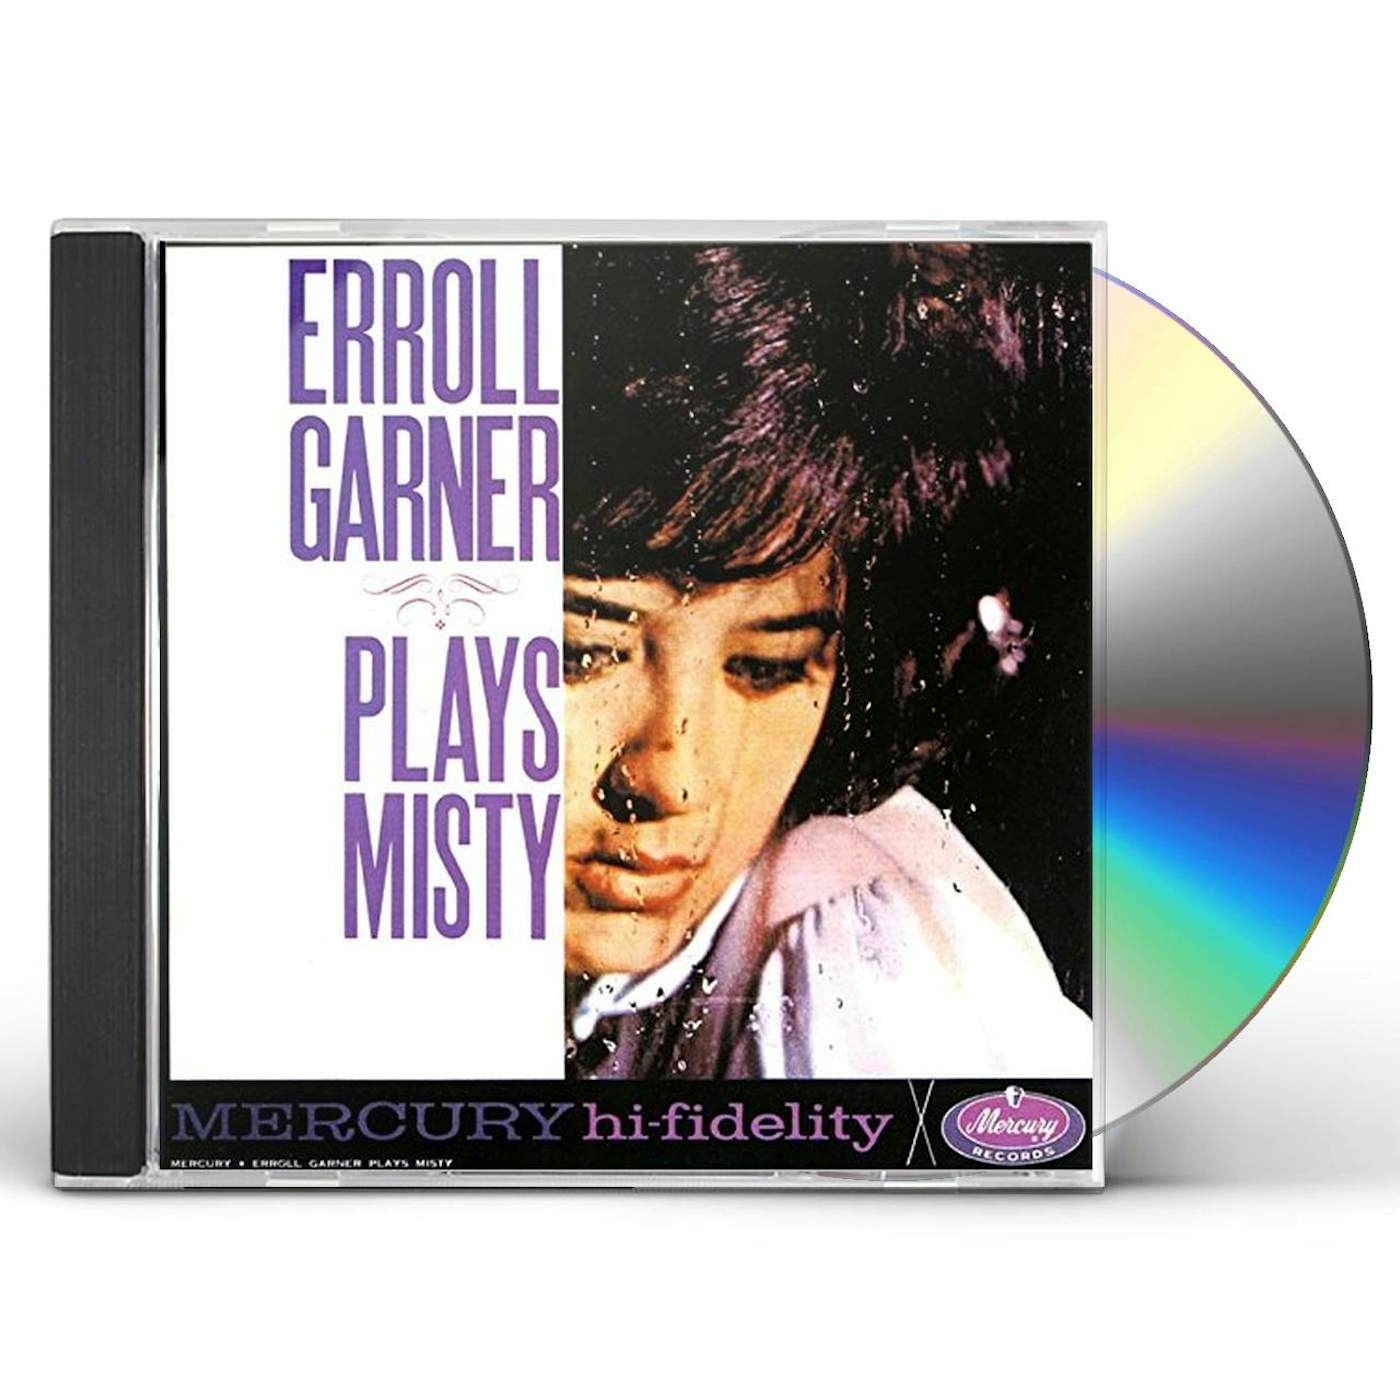 Erroll Garner MISTY CD